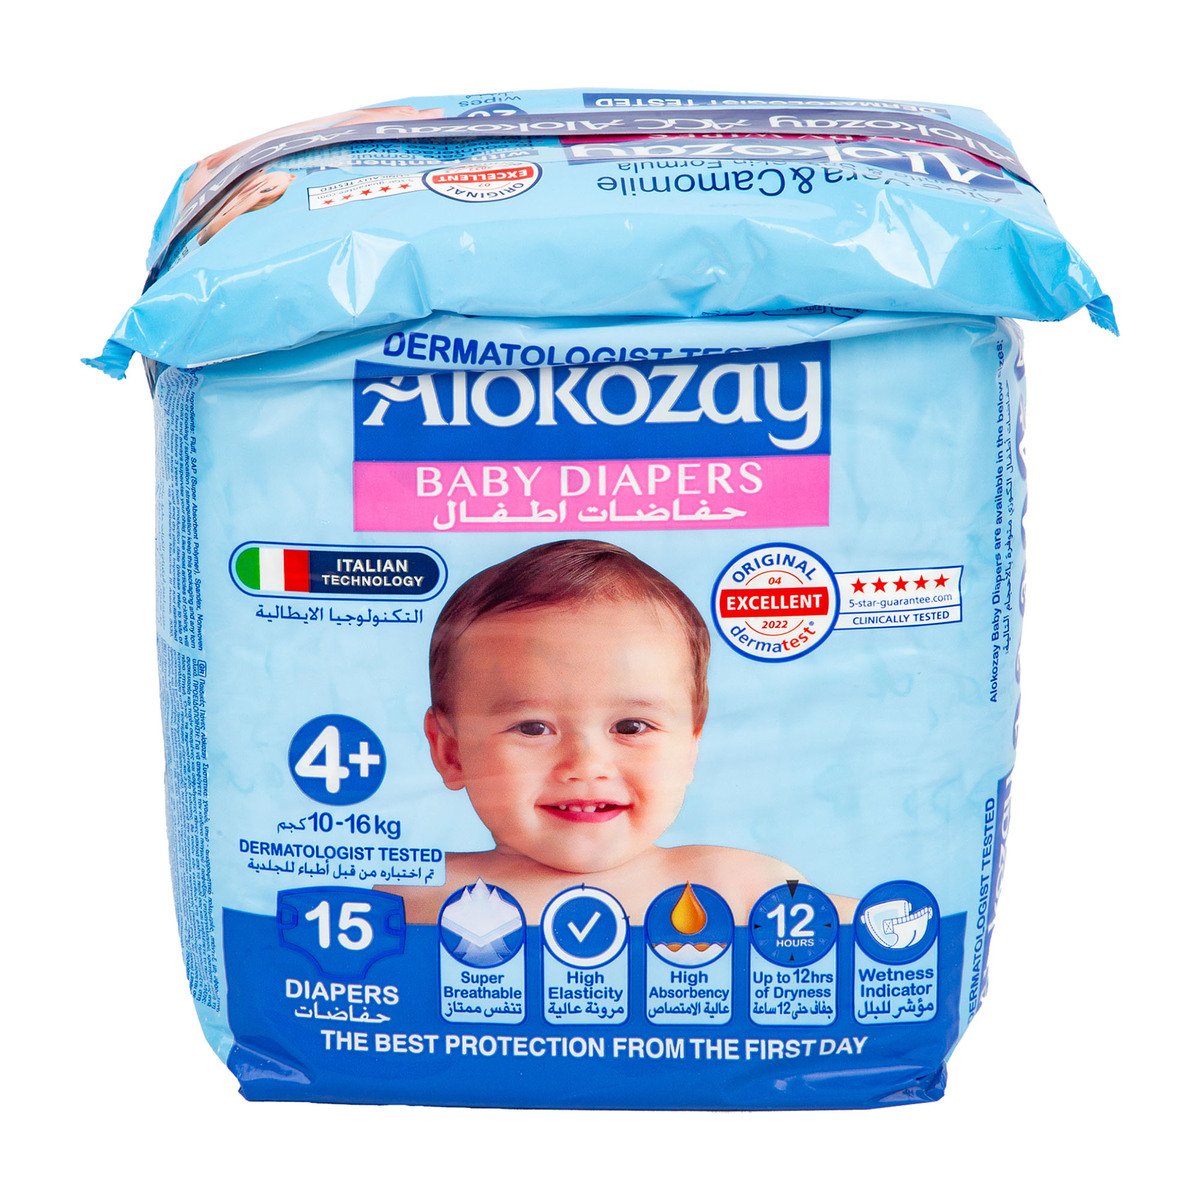 Alokozay Baby Diapers Size 4+, 10-16kg 15 pcs + Wipes 20 pcs